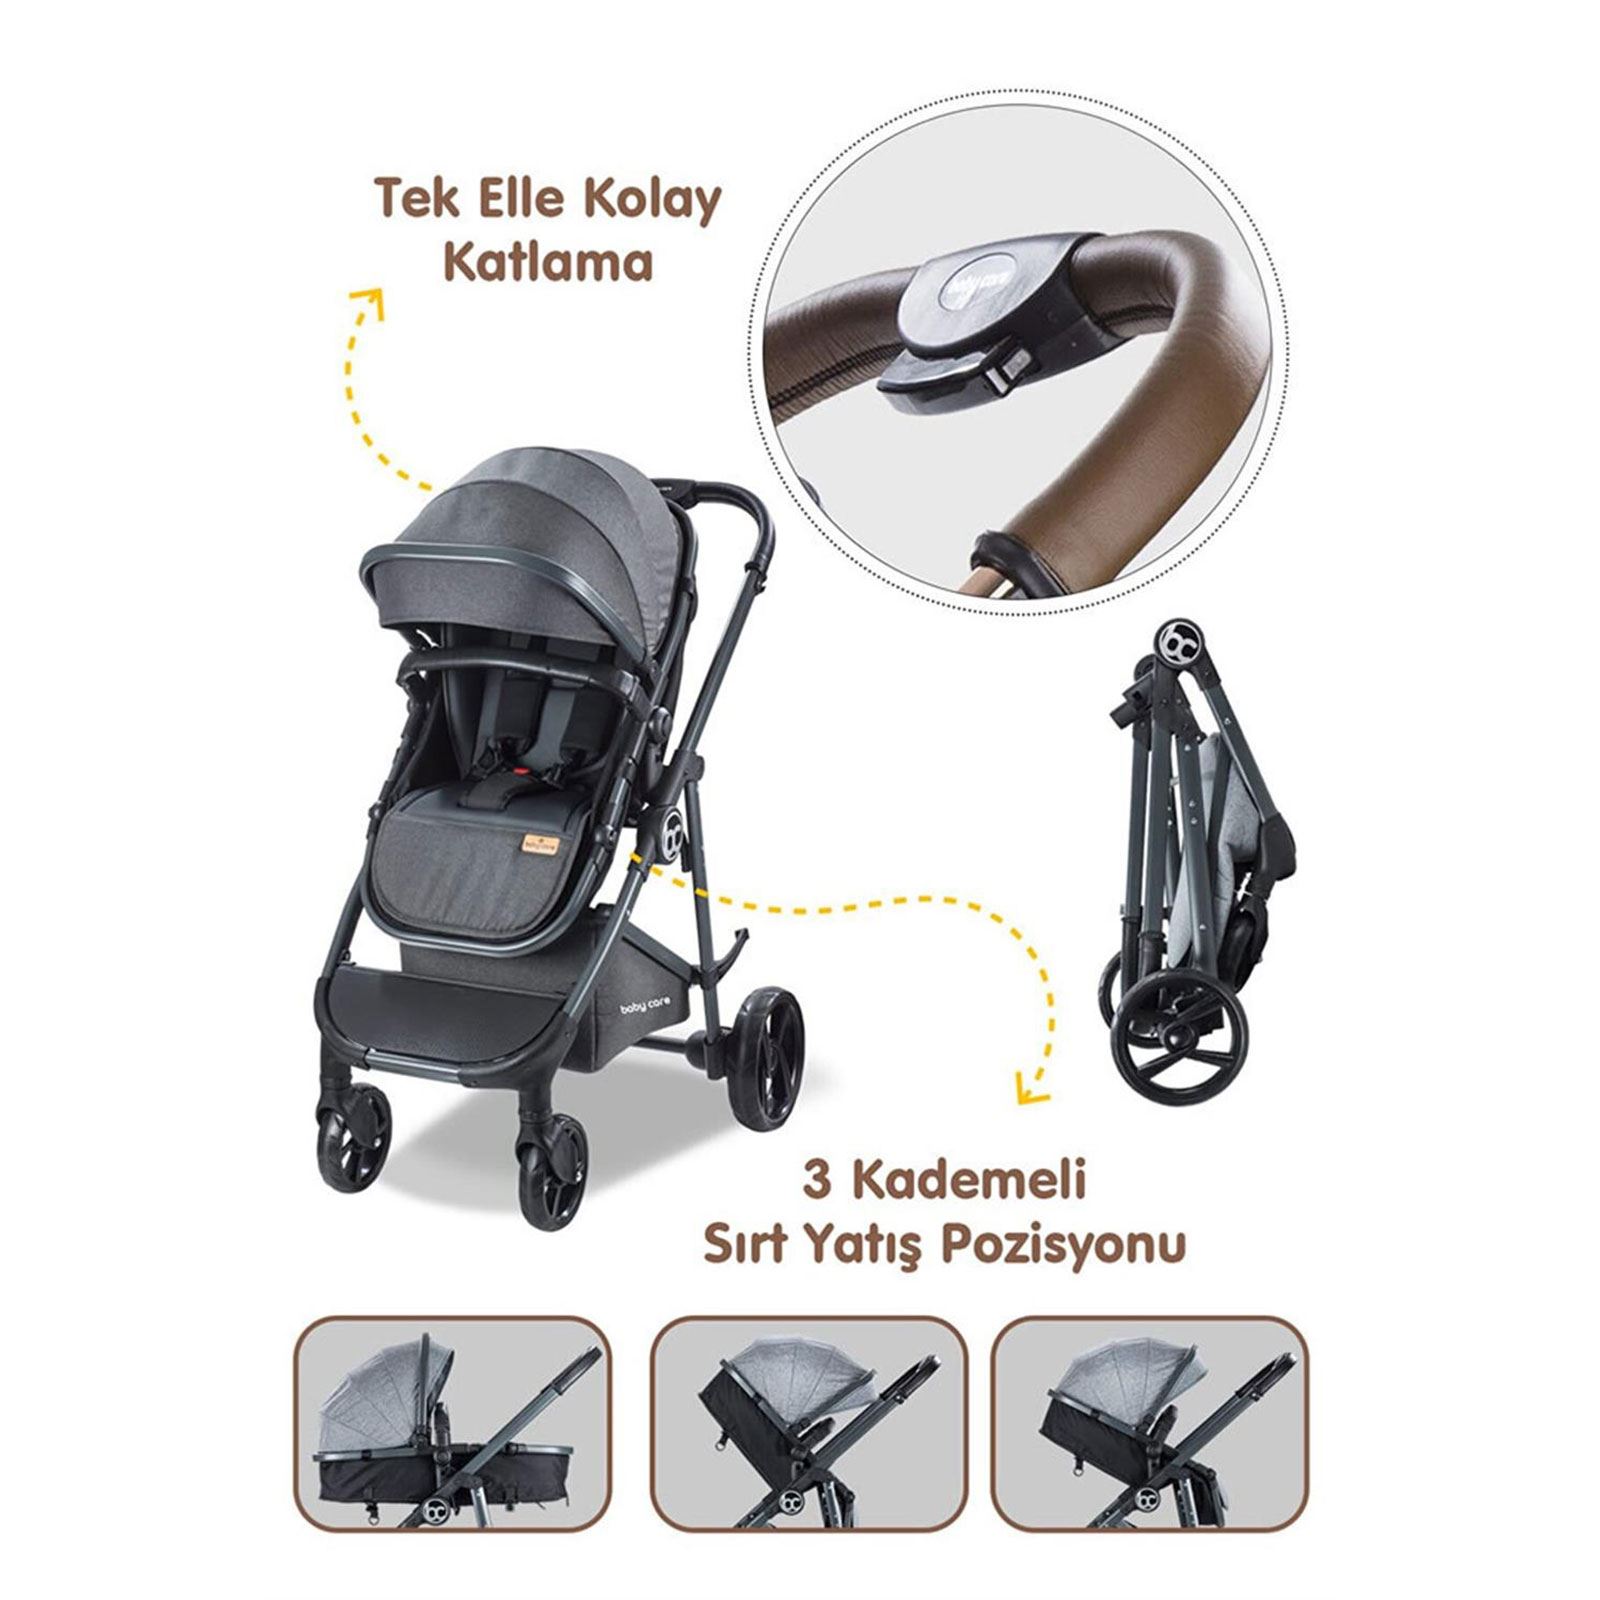 Babycare Exen Alüminyum Travel Sistem Bebek Arabası Gold